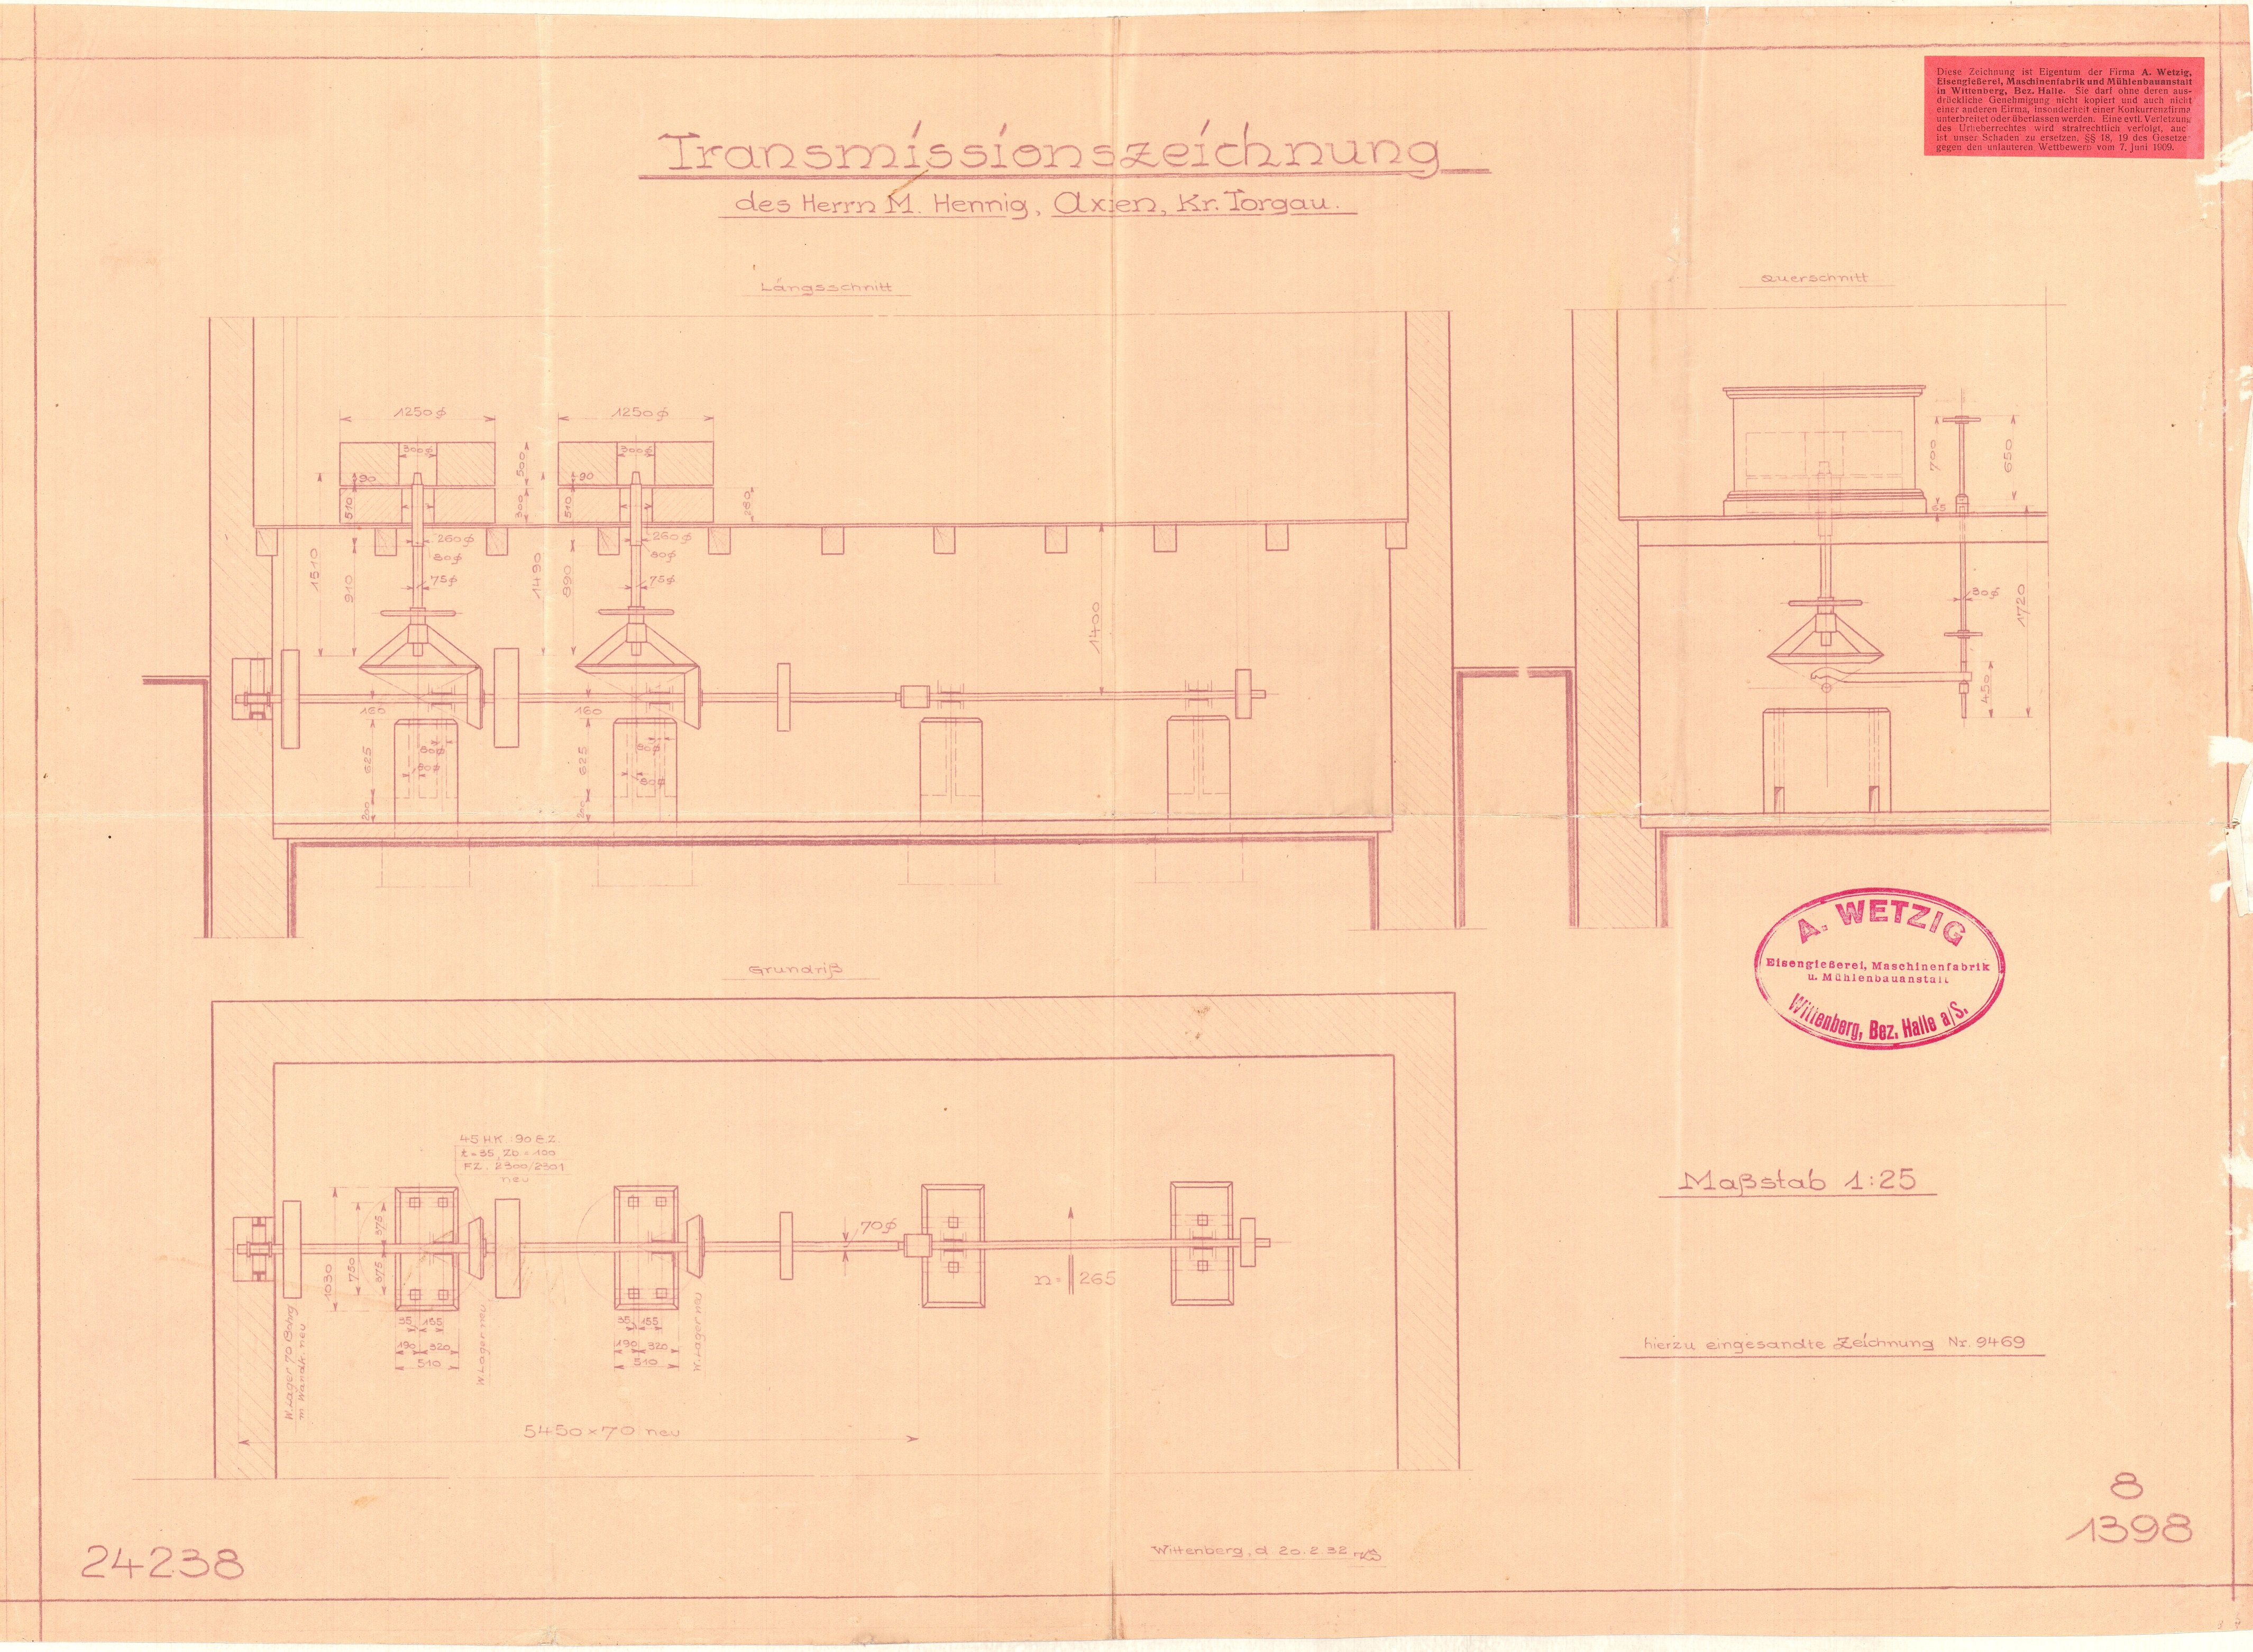 Transmissionszeichnung (Historische Mühle von Sanssouci CC BY-NC-SA)